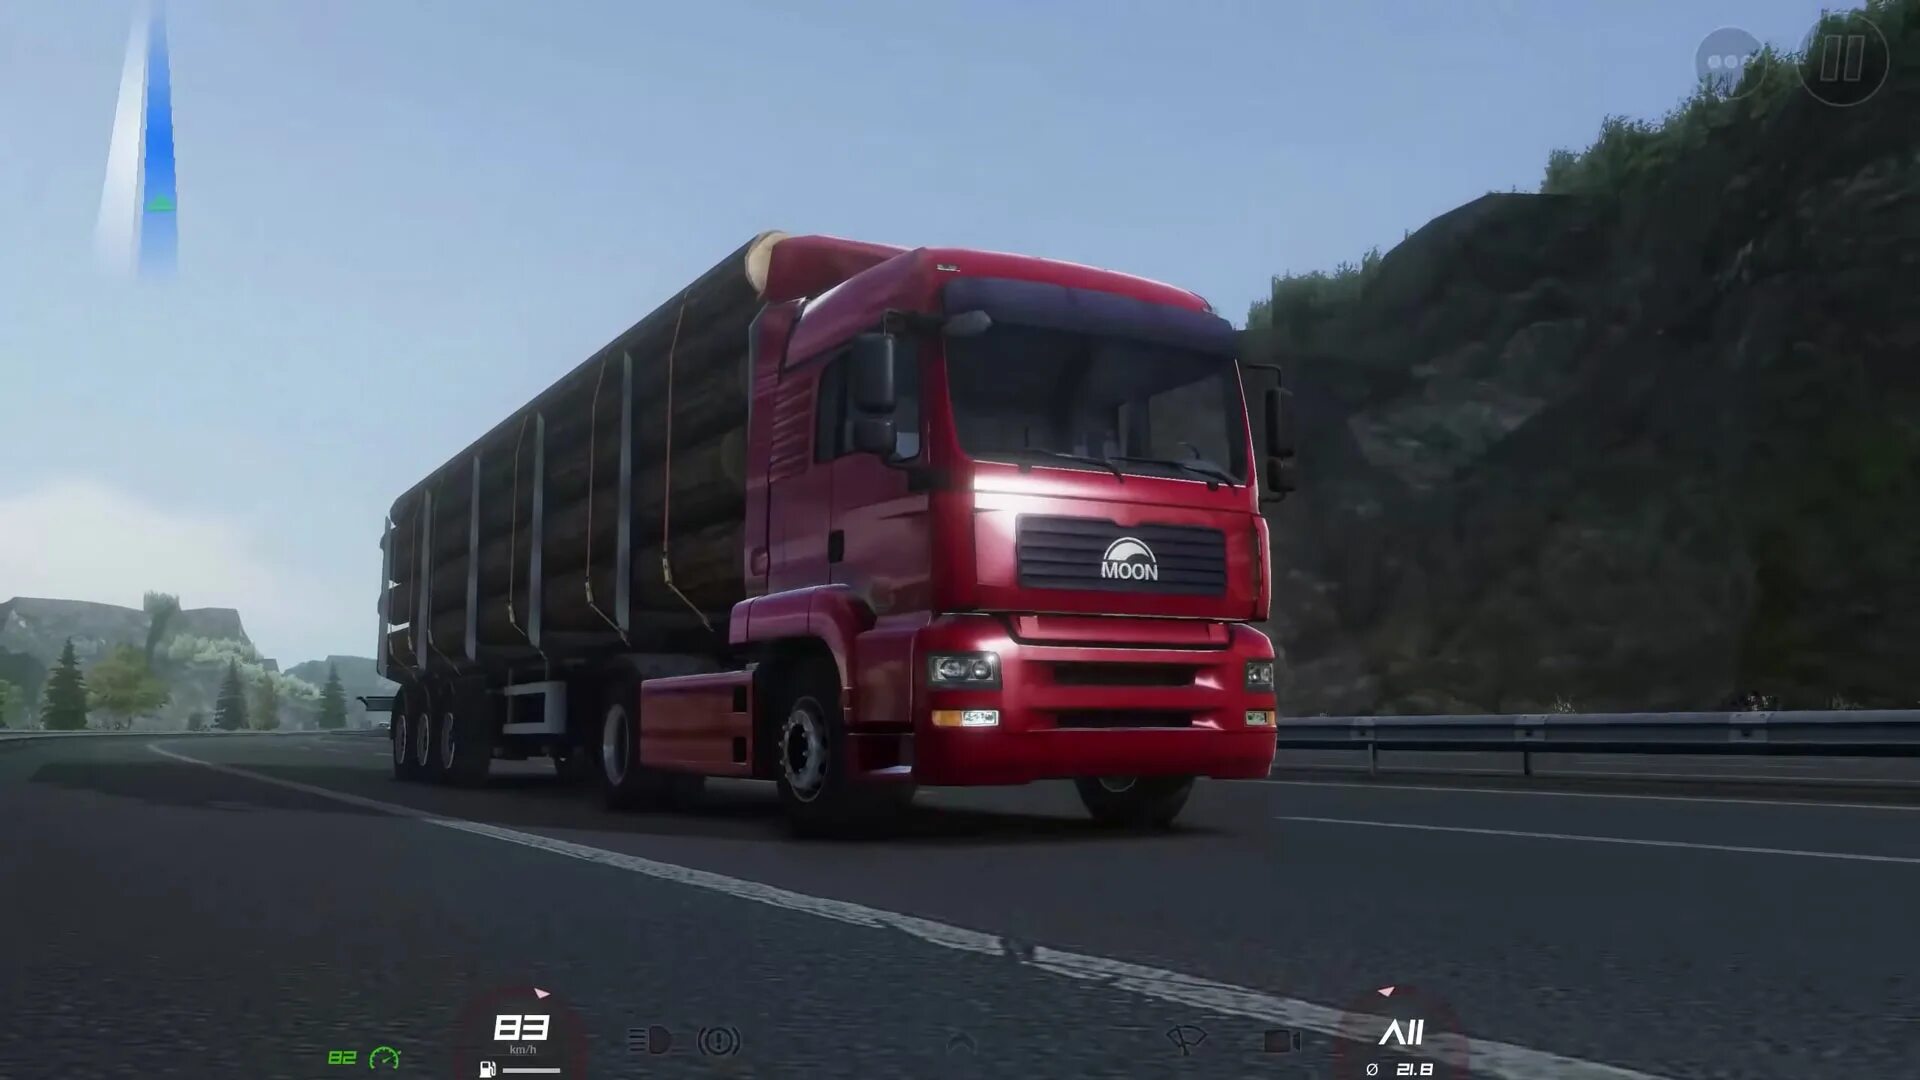 Truck of Europe 3. Truckers of Europe 3. Euro Truck Simulator 3 Europa. Тракерс оф евро 3. Трак европа 3 версии